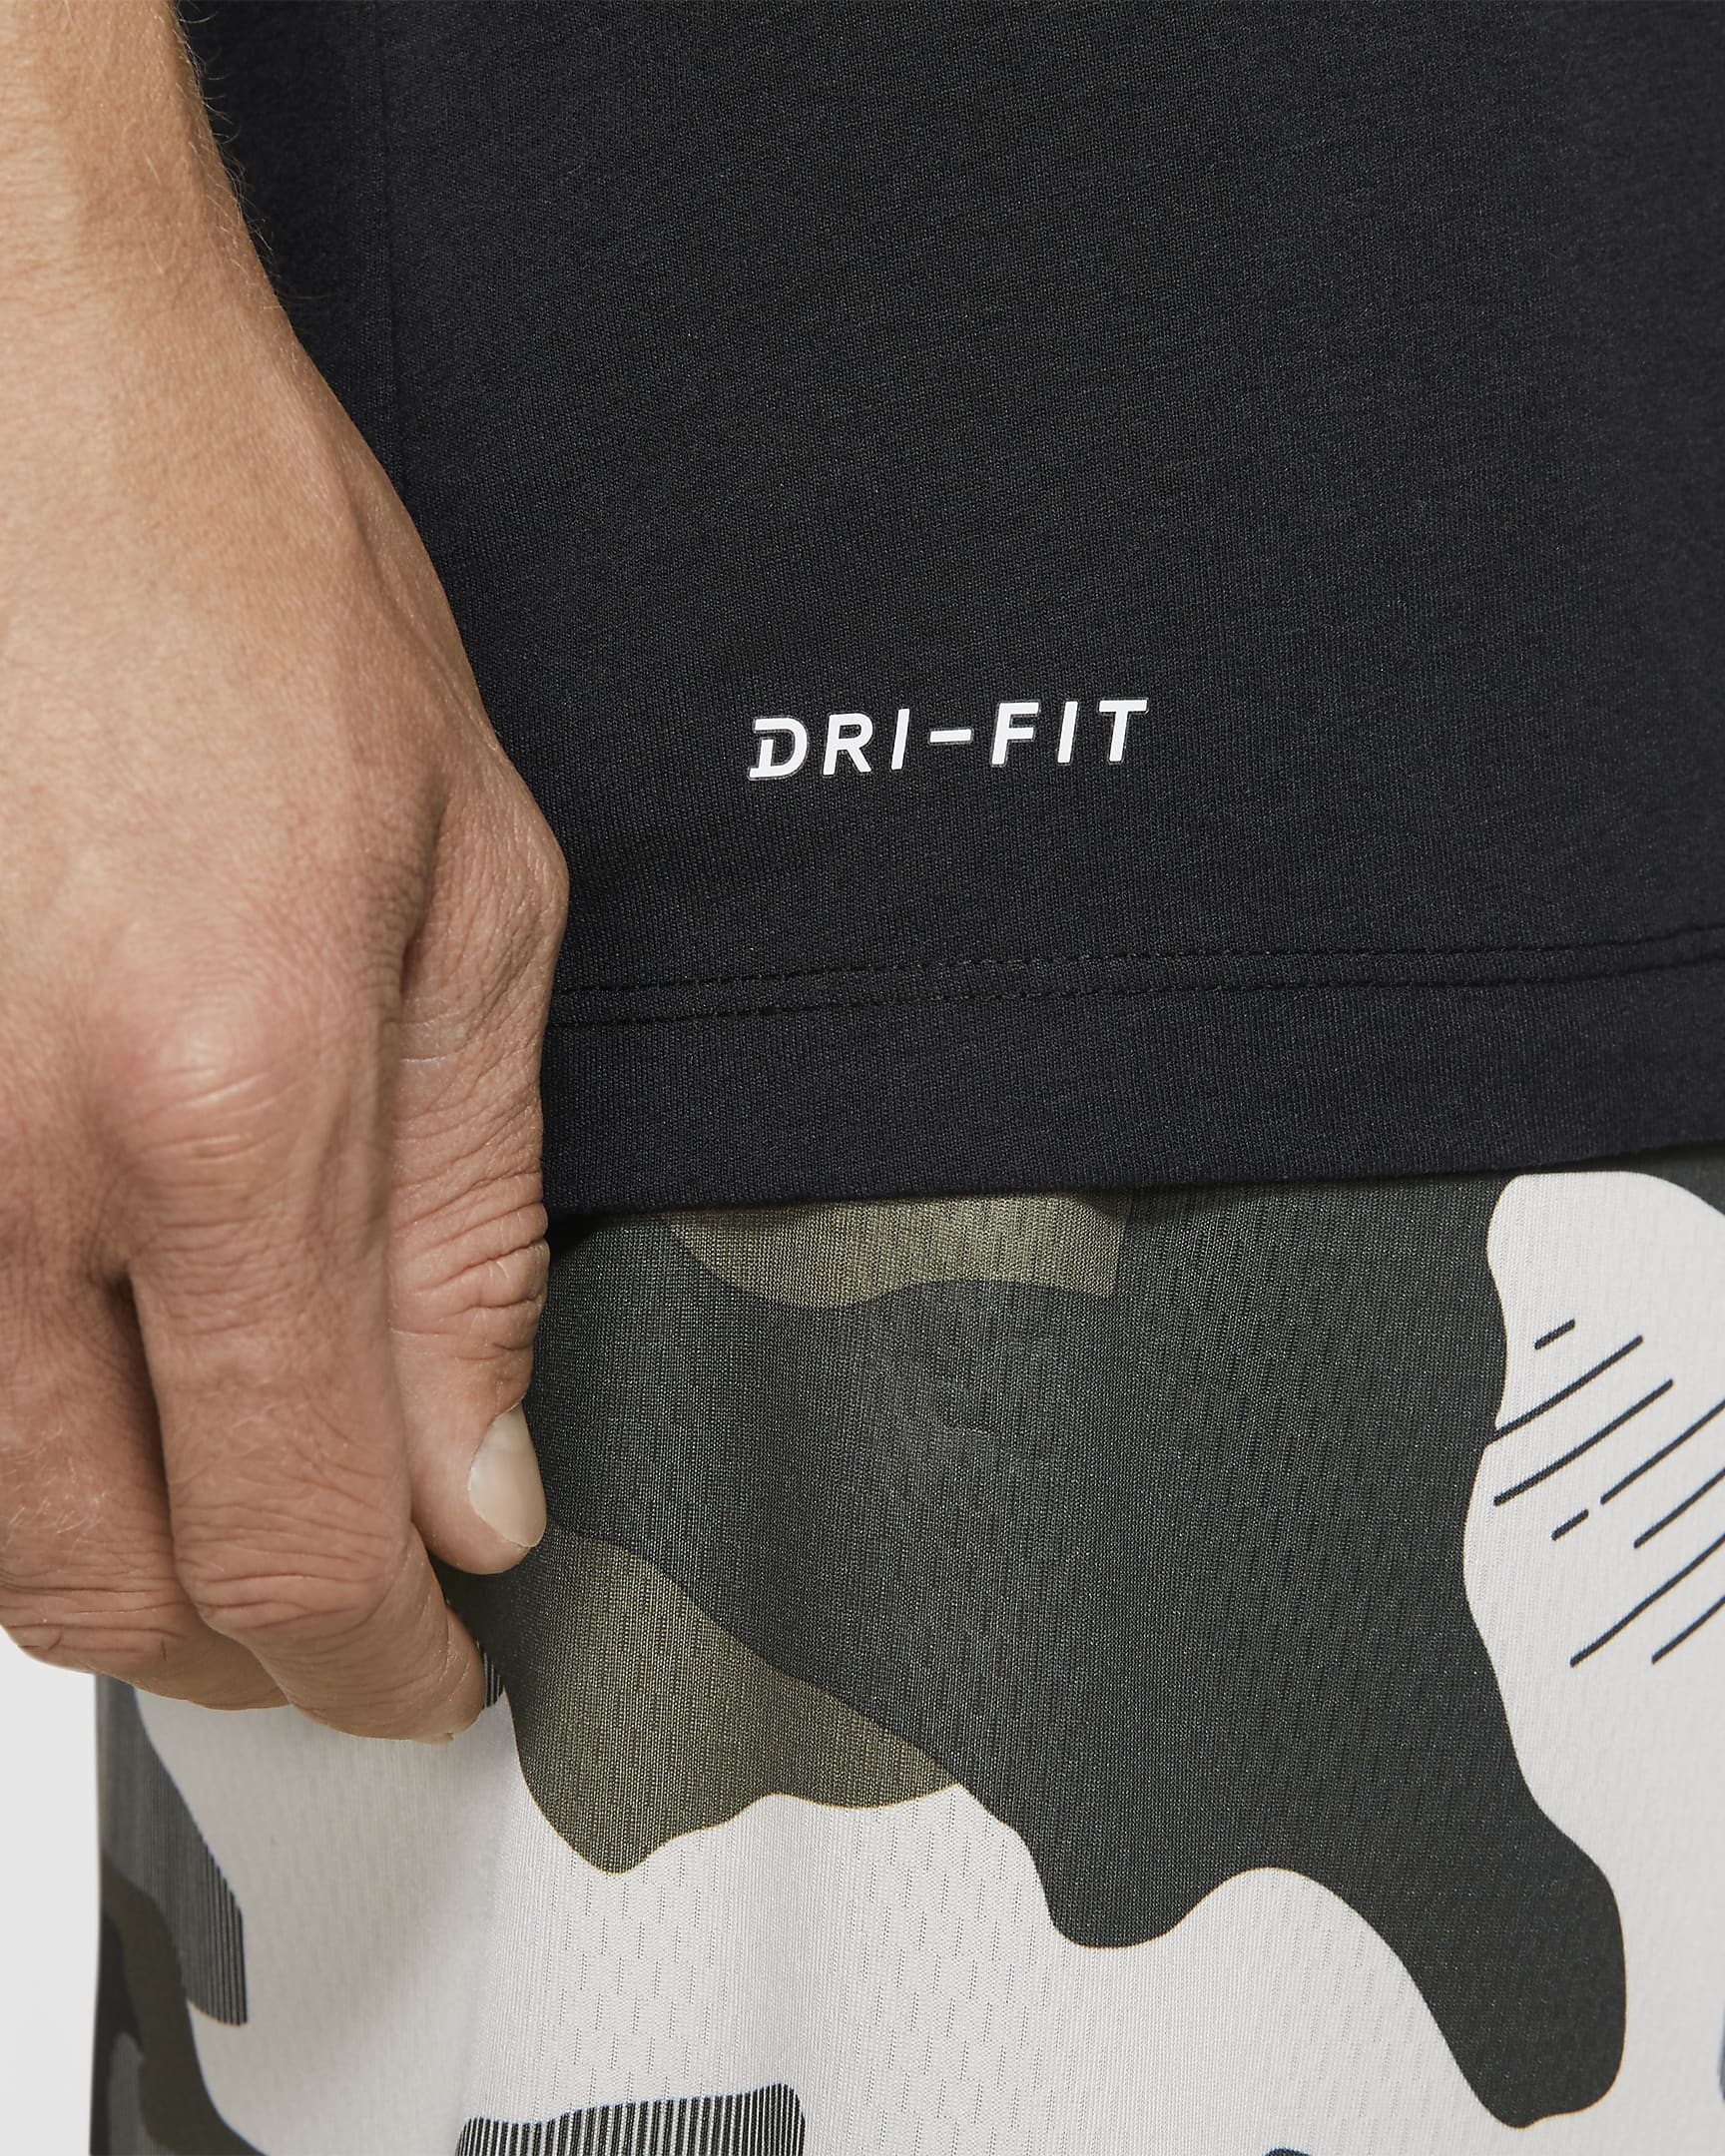 Nike Dri-FIT Men's Training T-Shirt - Black